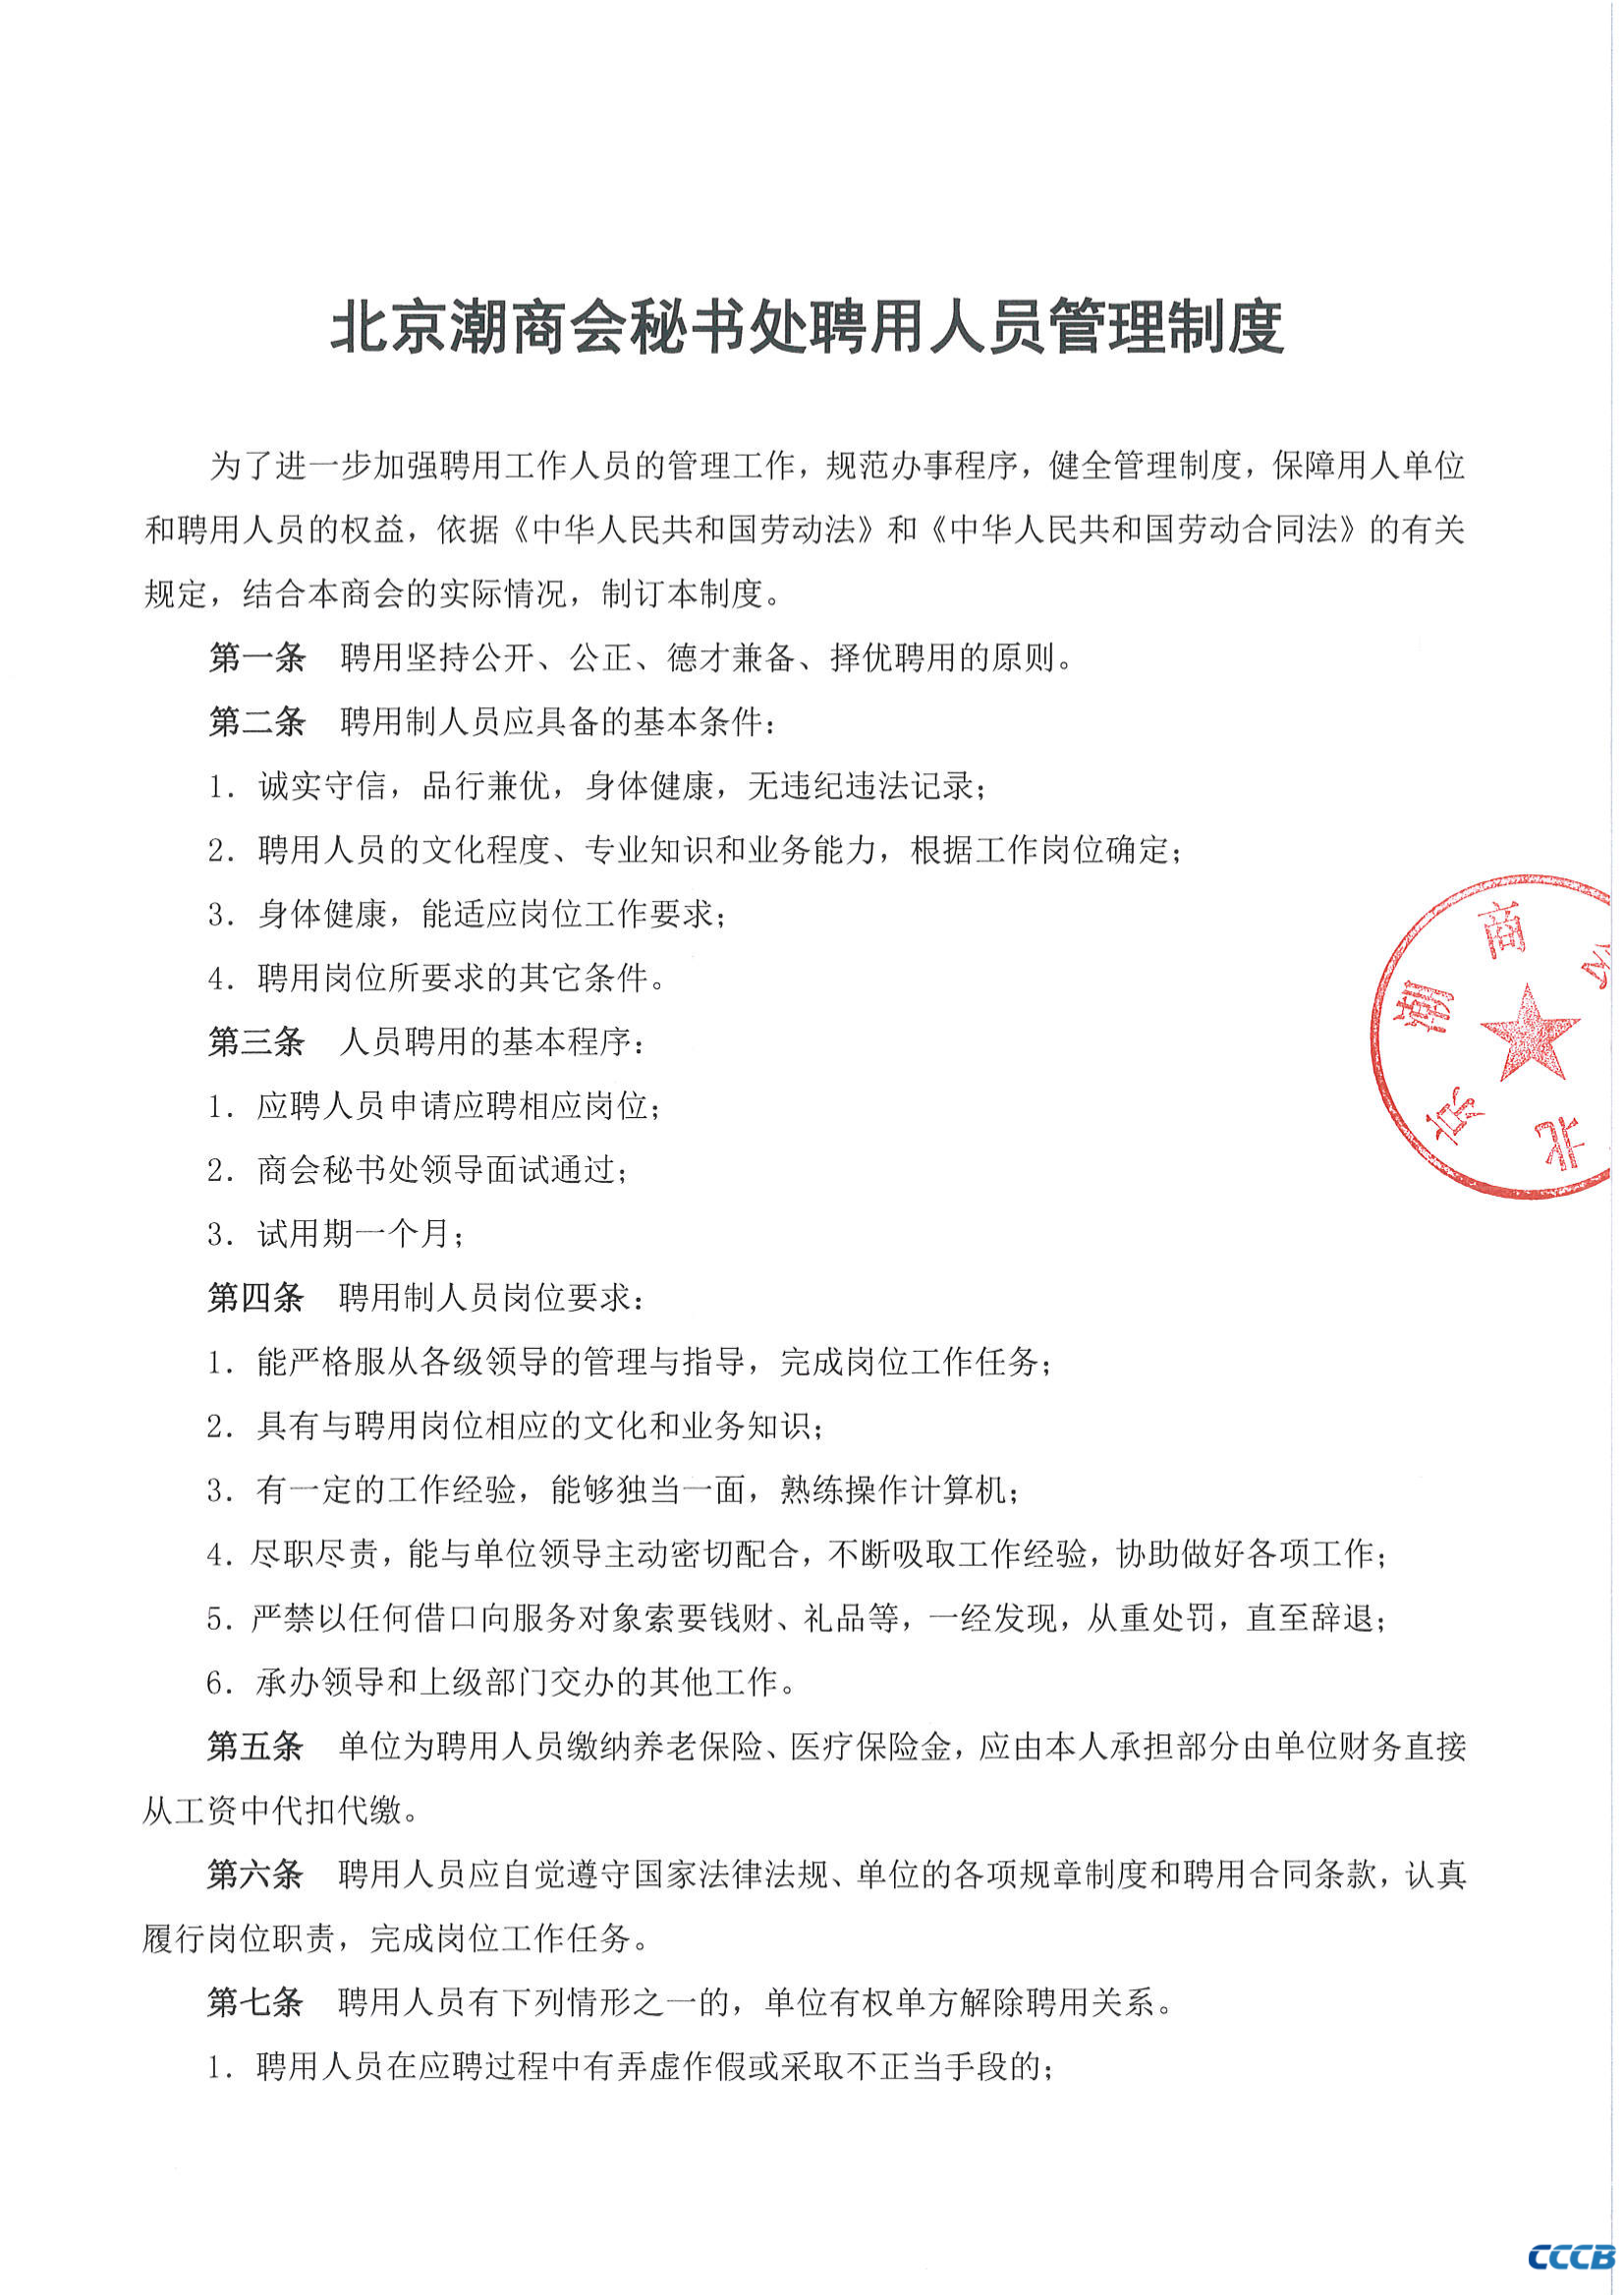 北京潮商会秘书处聘用人员管理制度